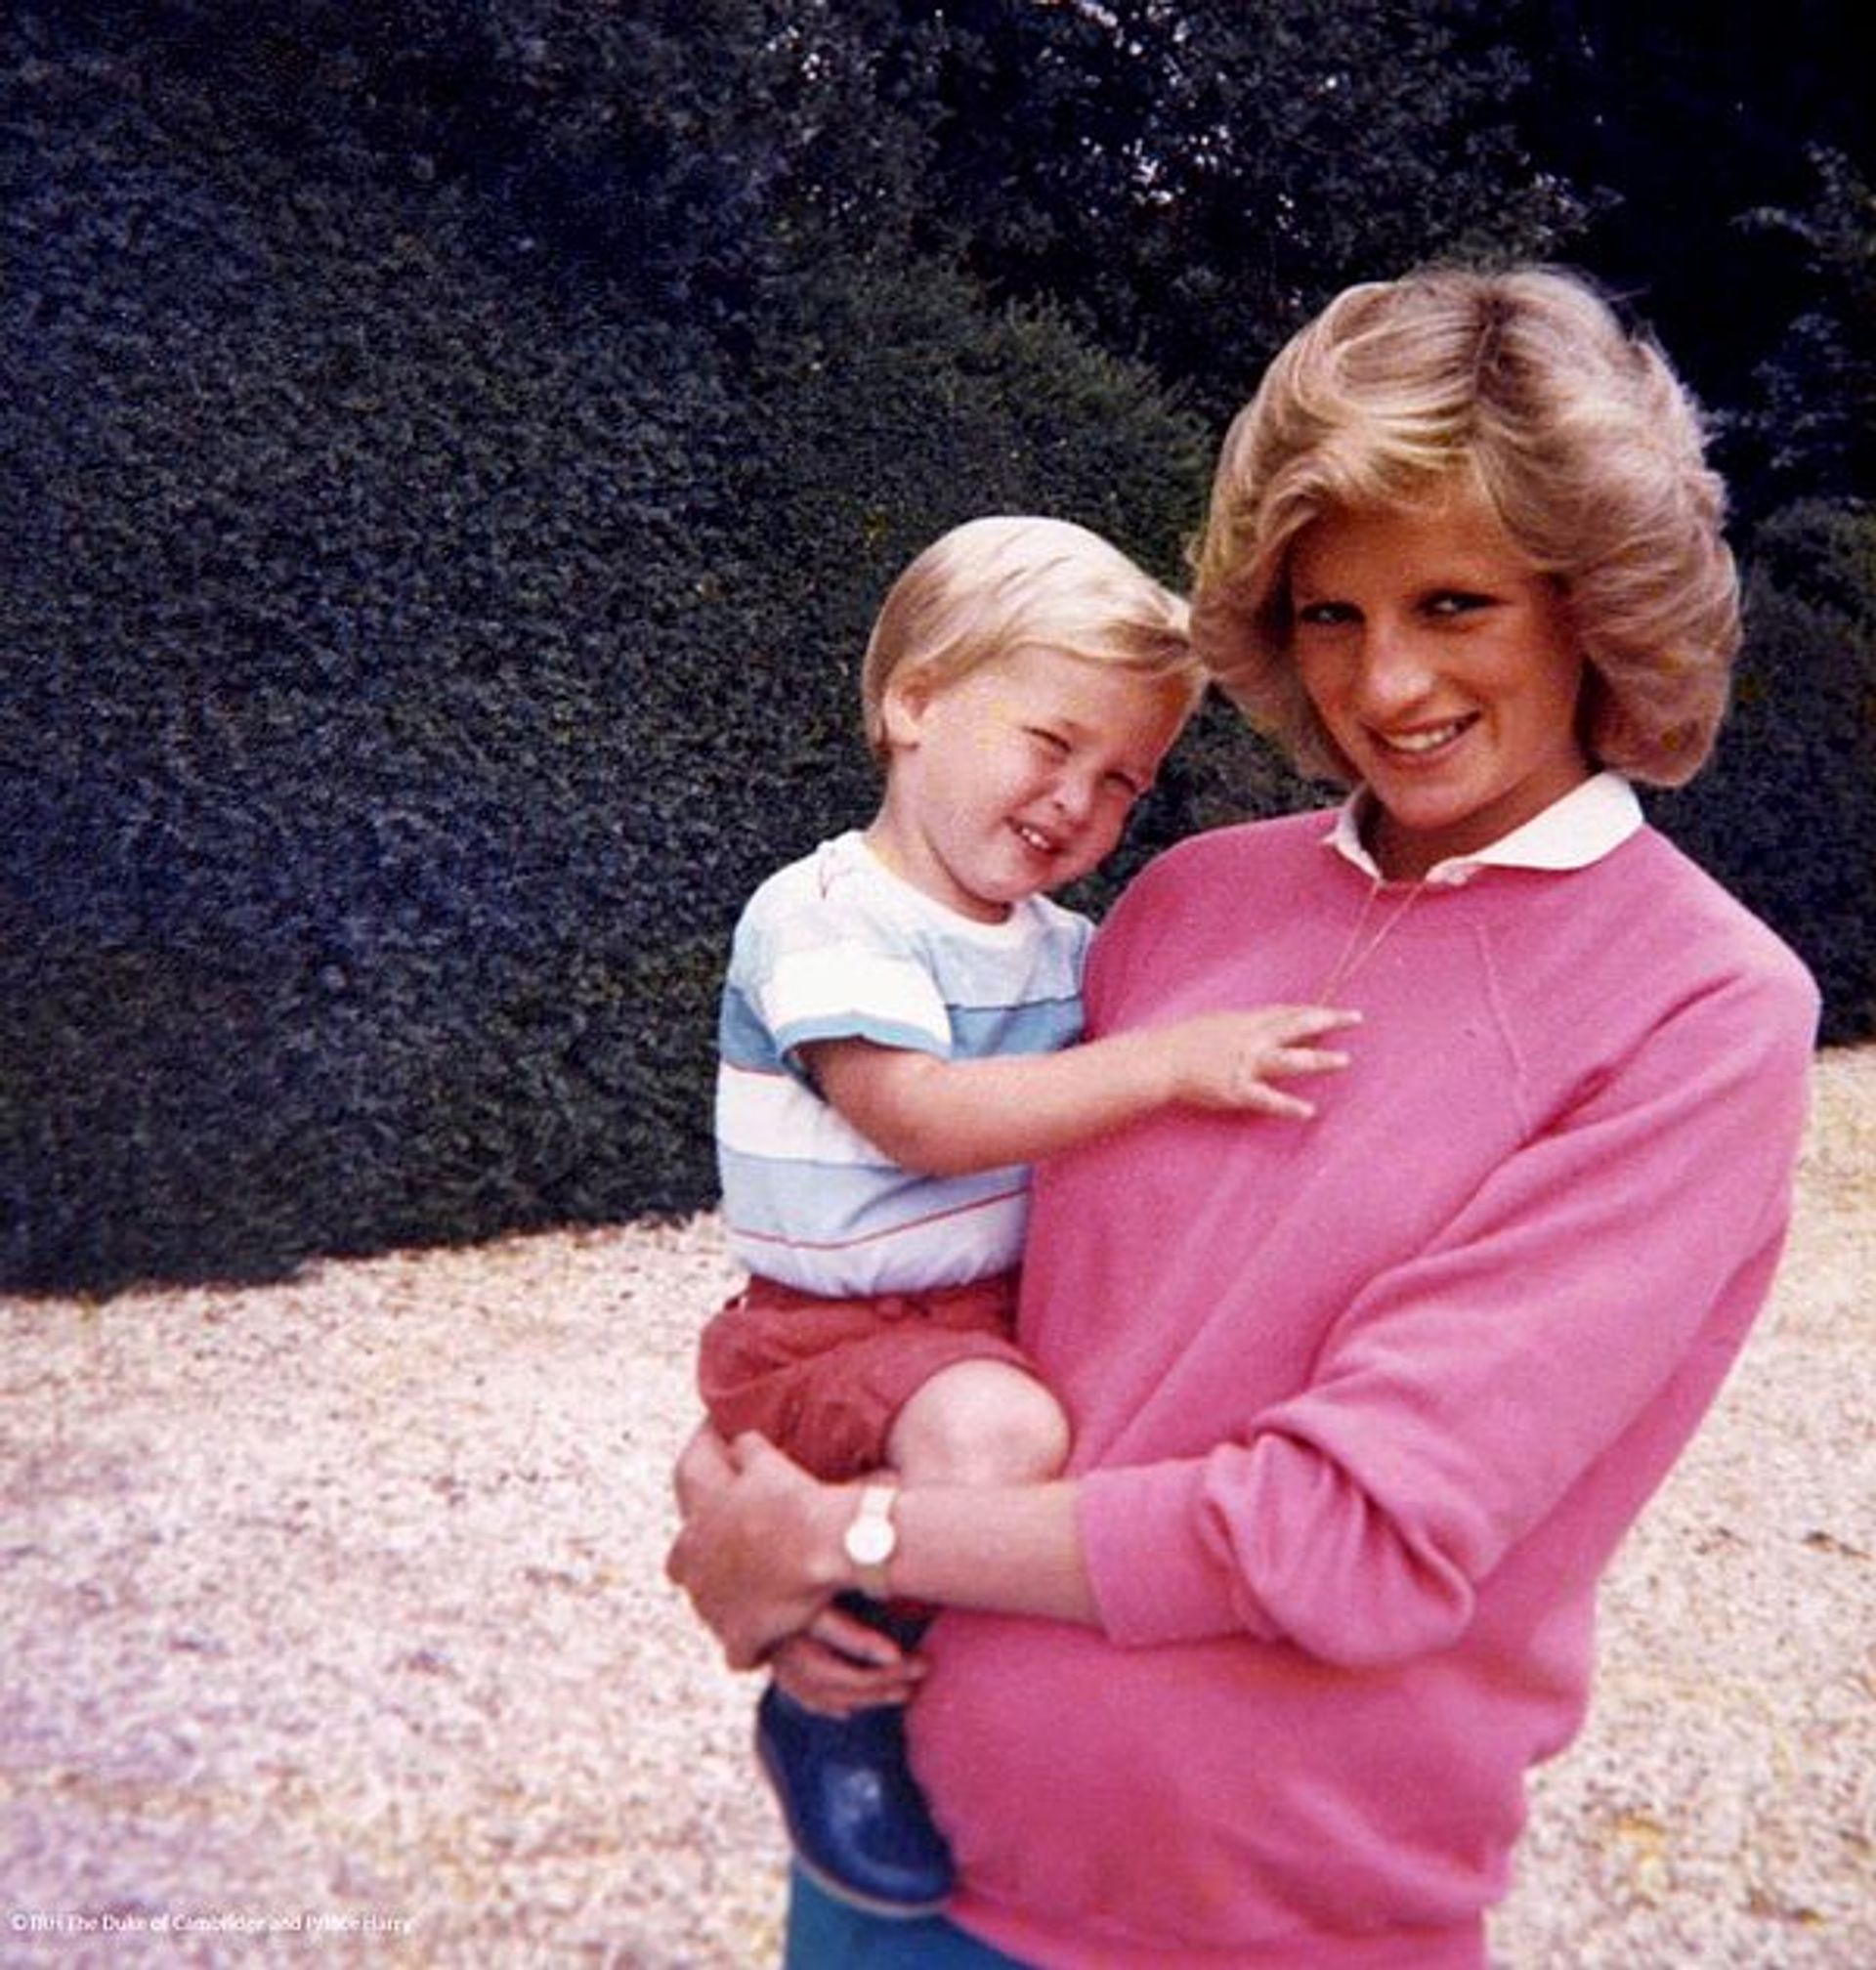 Prinses Diana met prins Harry op haar heup en prins William in haar buik.